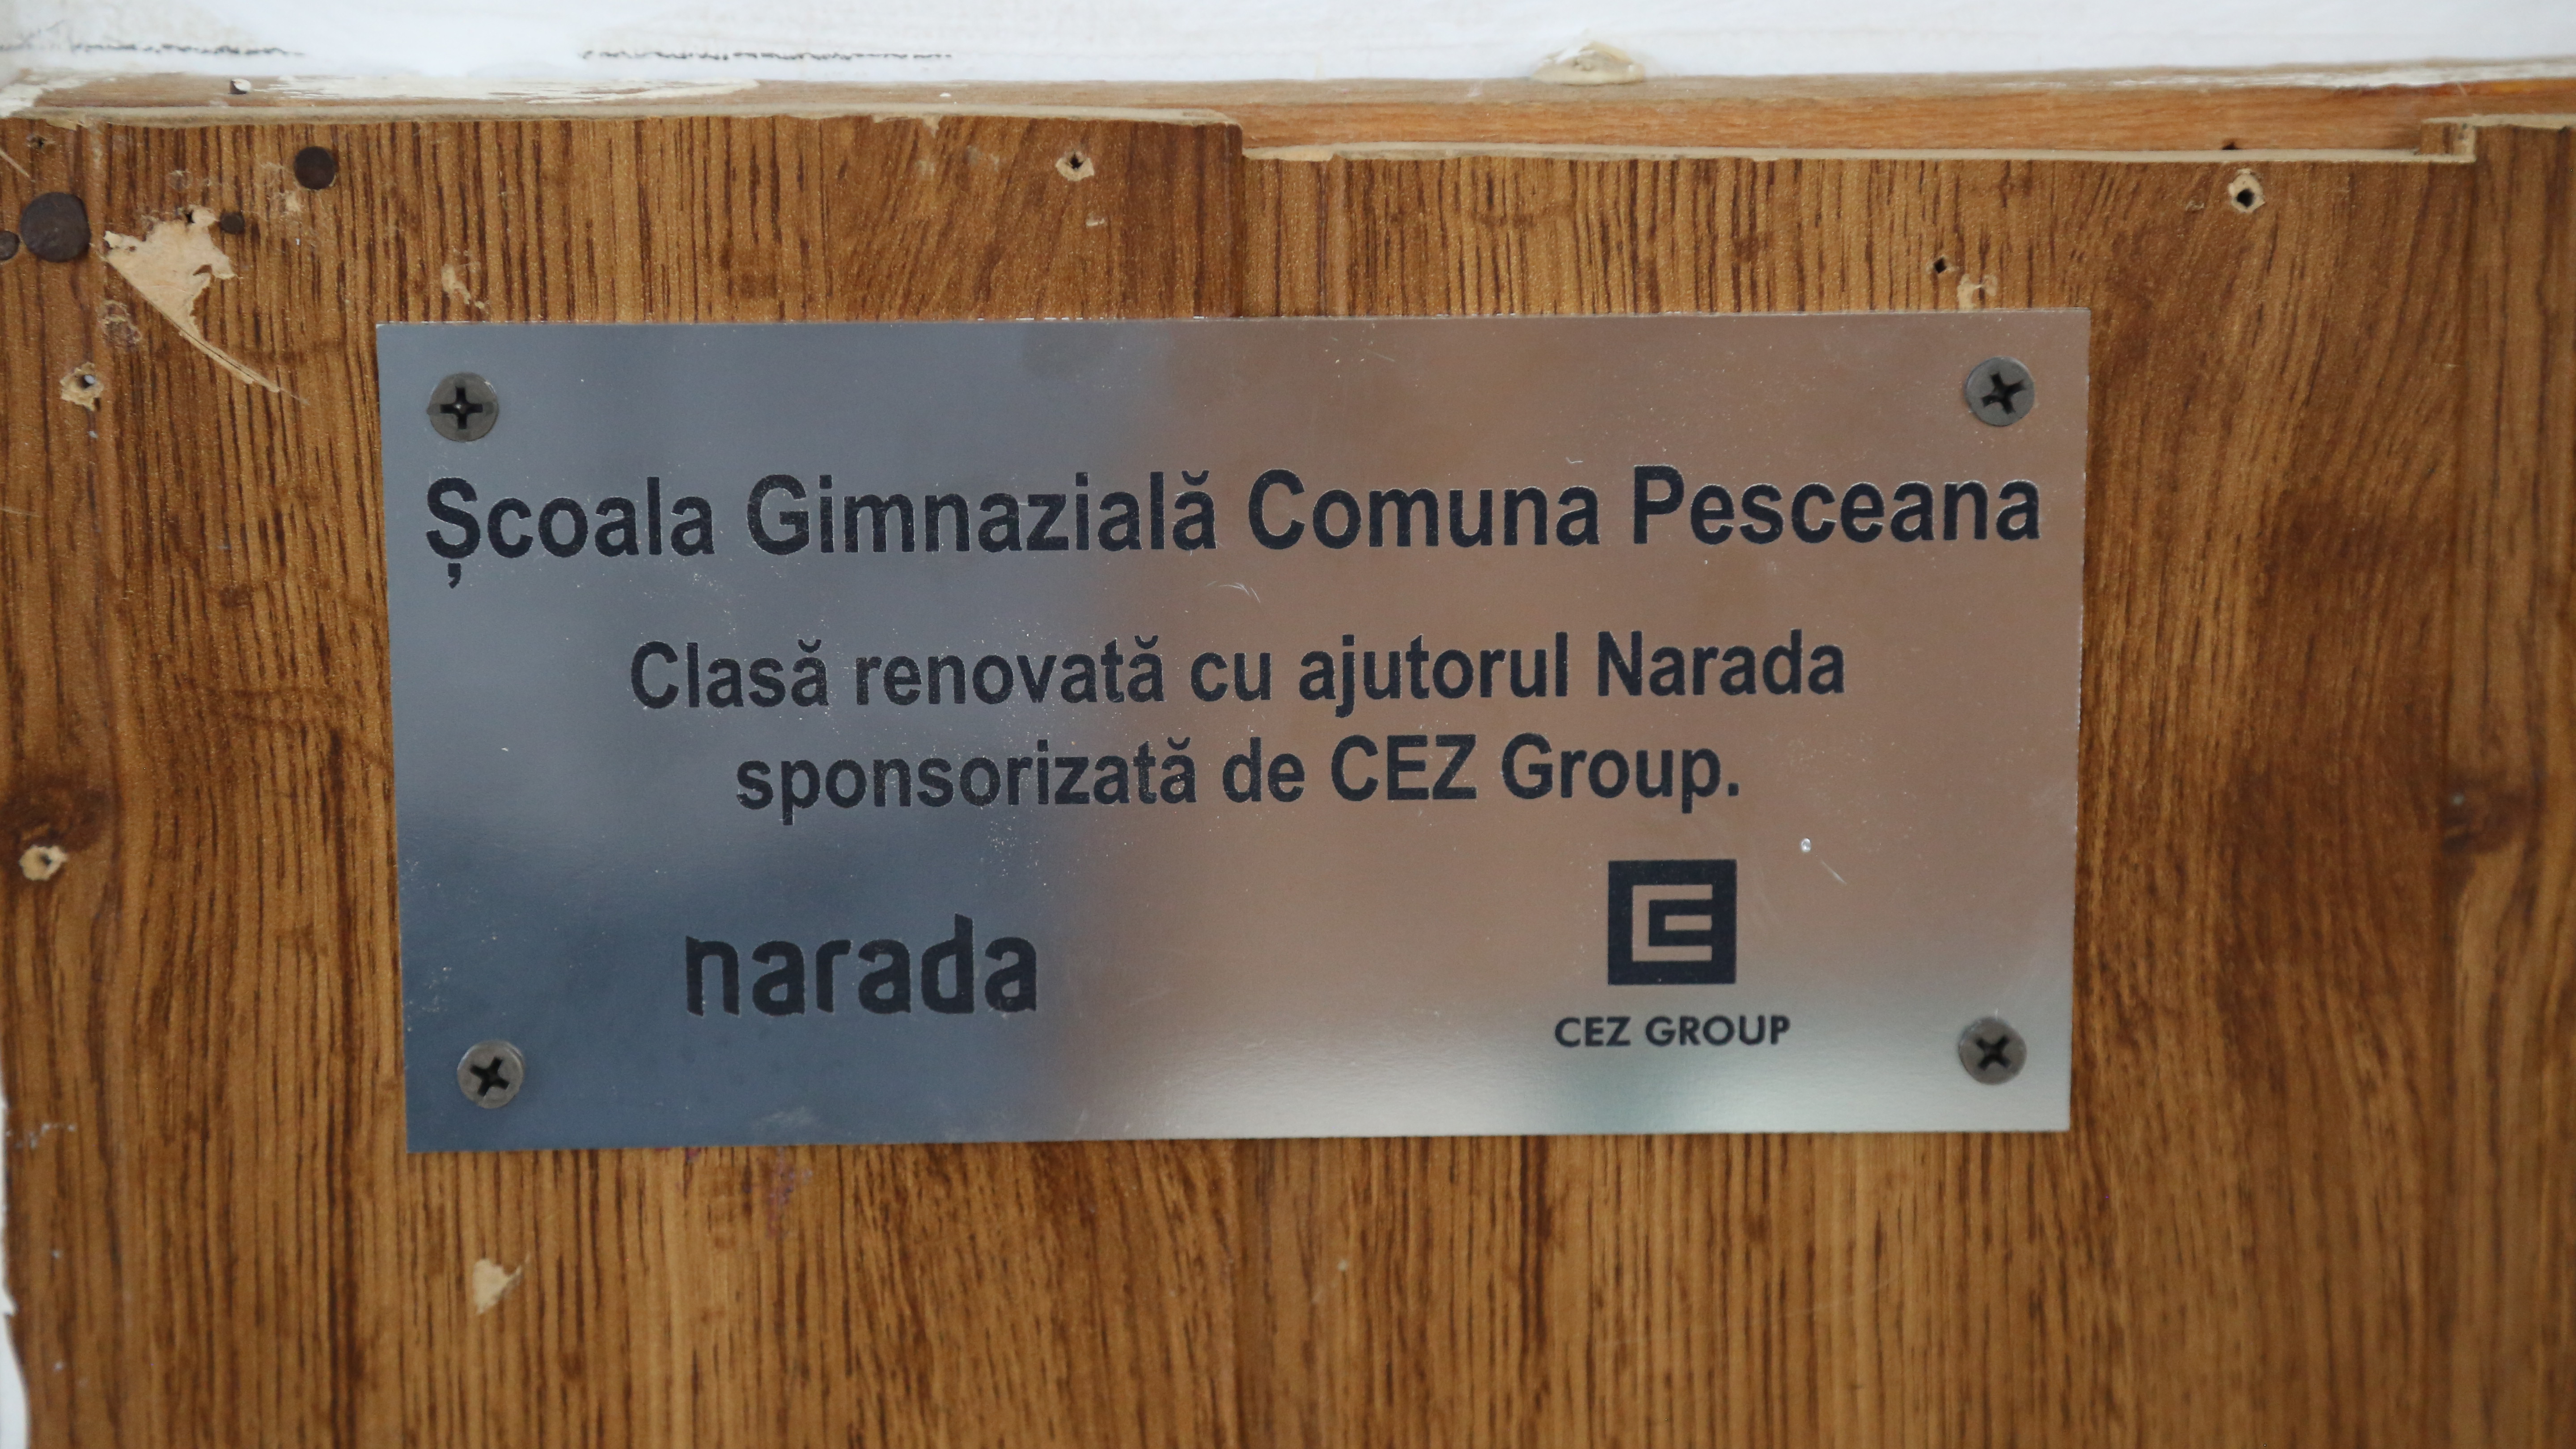 Primul beneficiar al alertelor soluționate de CEZ cu sprijinul Narada, din platforma  HartaEdu.ro, este Școala Gimnazială Pesceana din Vâlcea